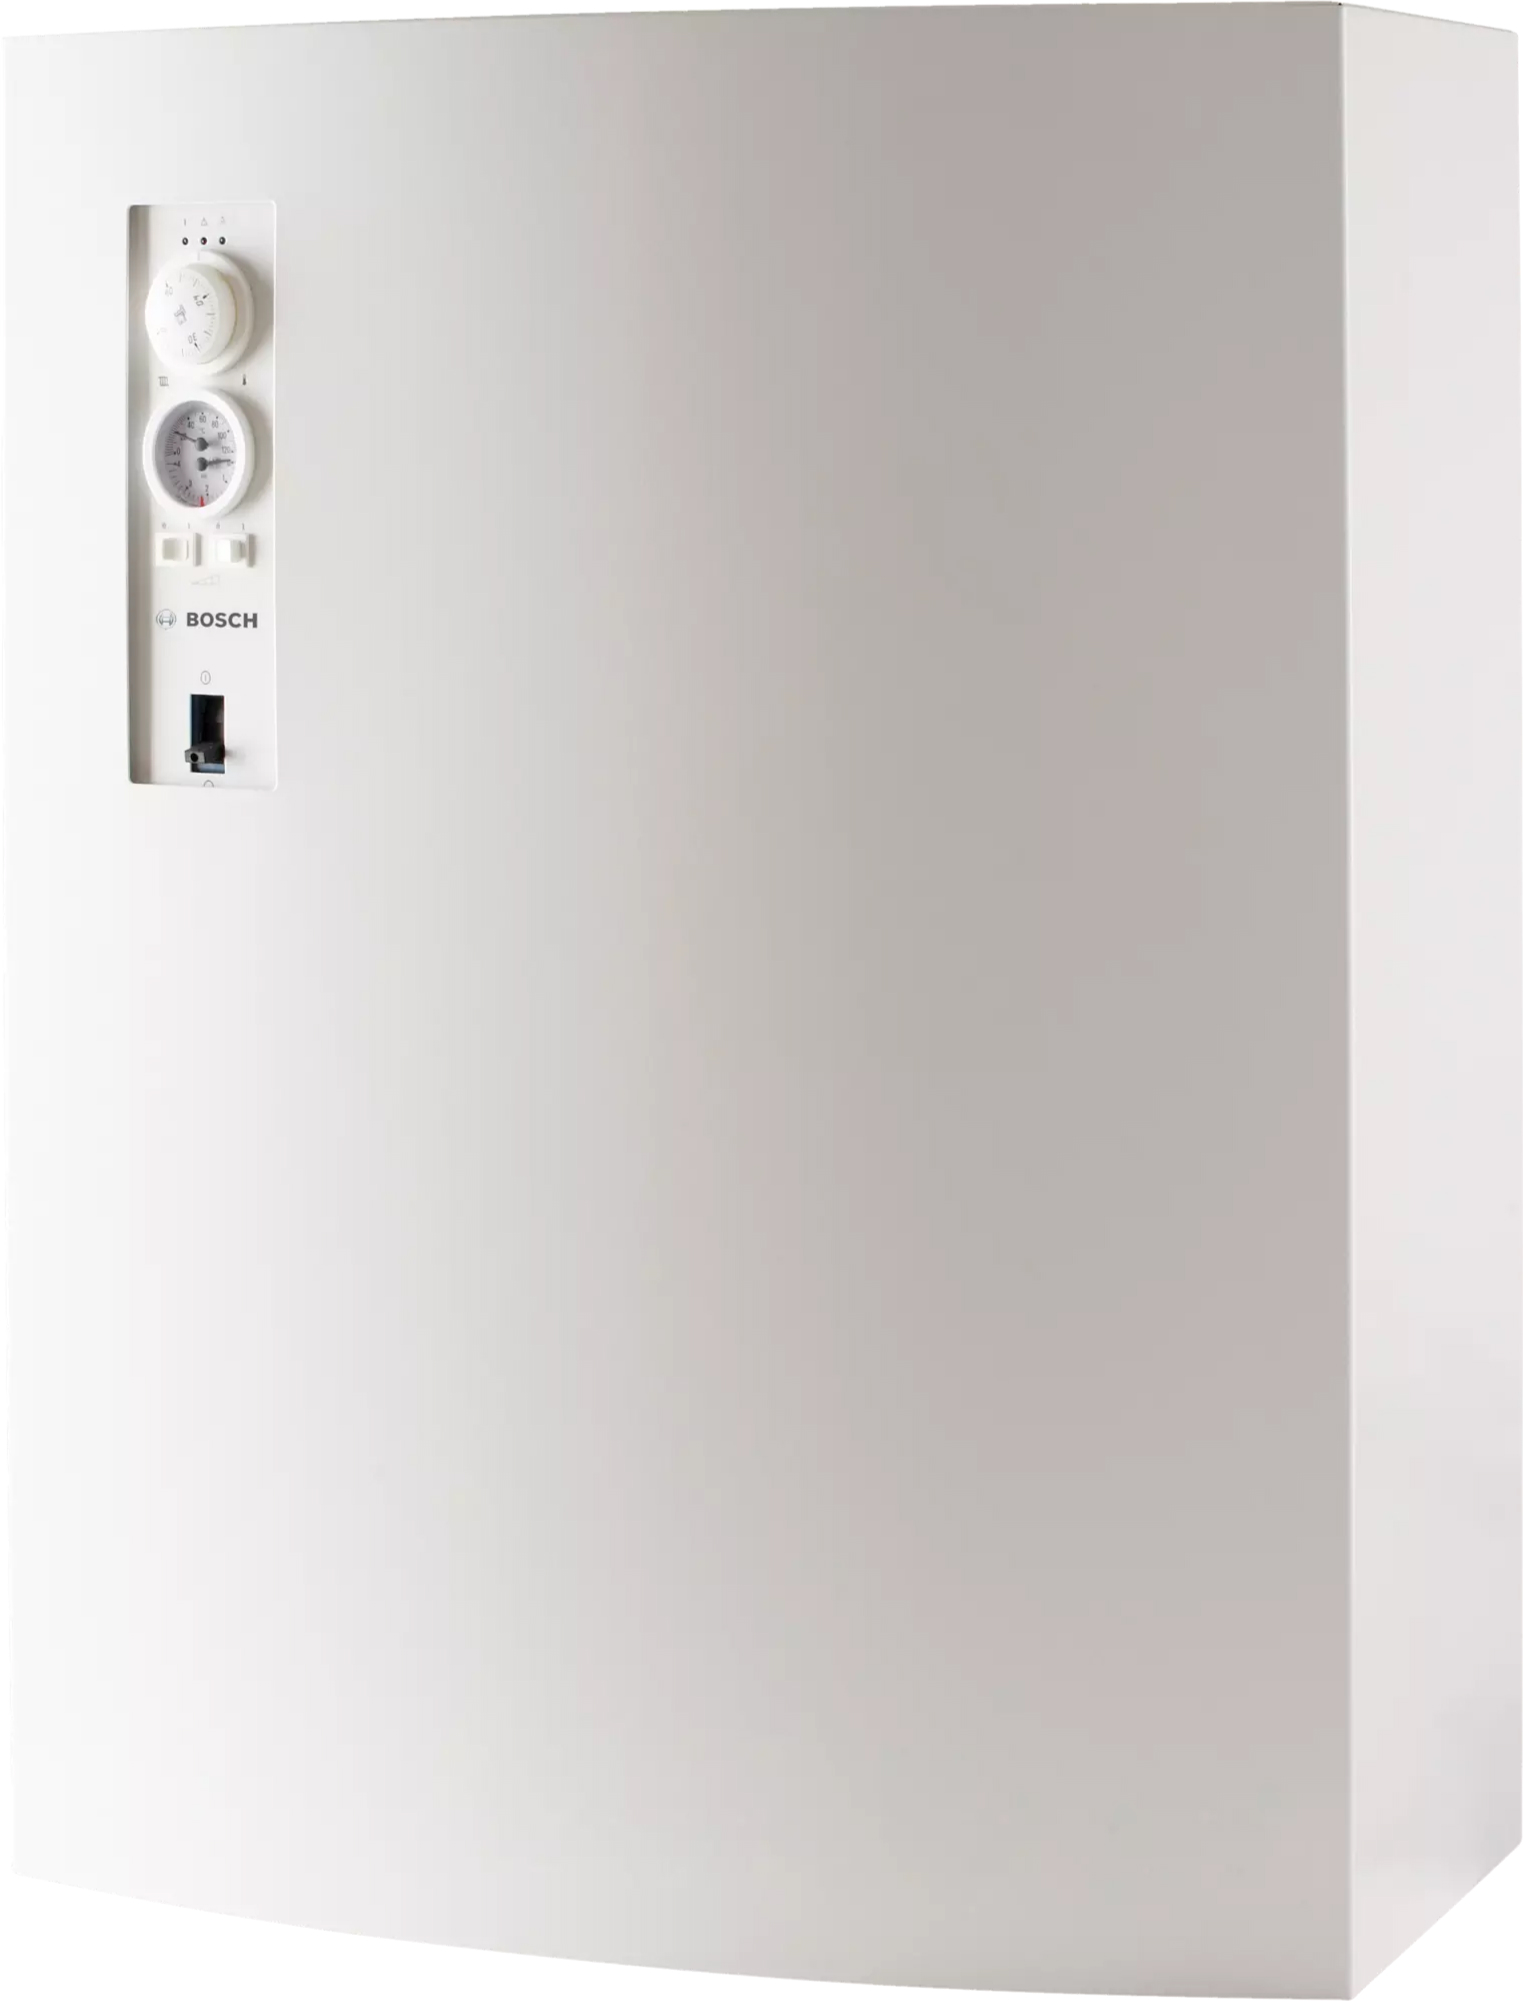 Электрический котел Bosch Tronic 5000 H 36kW ErP (7738504952) в интернет-магазине, главное фото